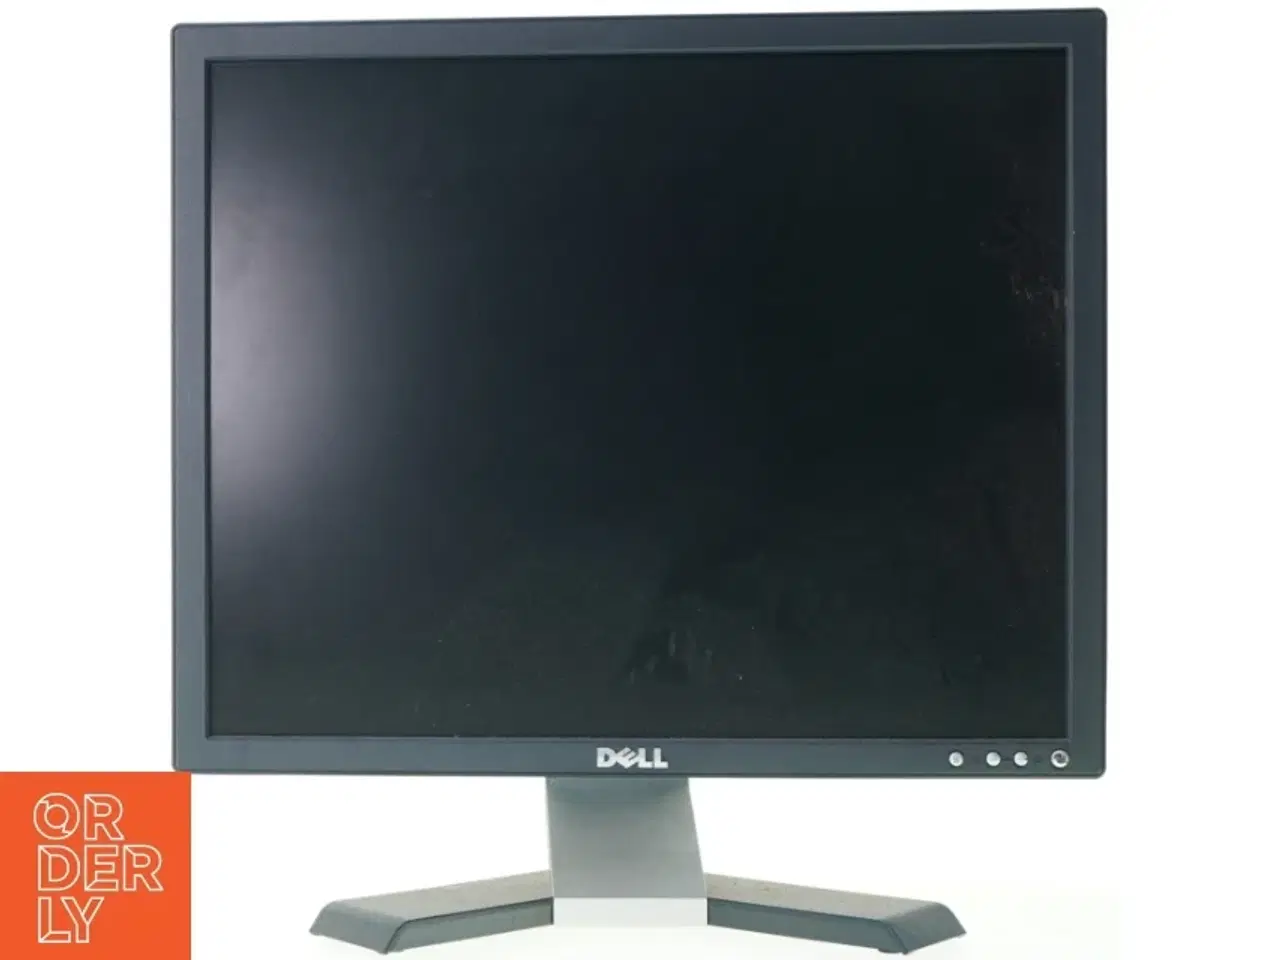 Billede 1 - Skærm fra Dell (str. 41 x 34 cm)